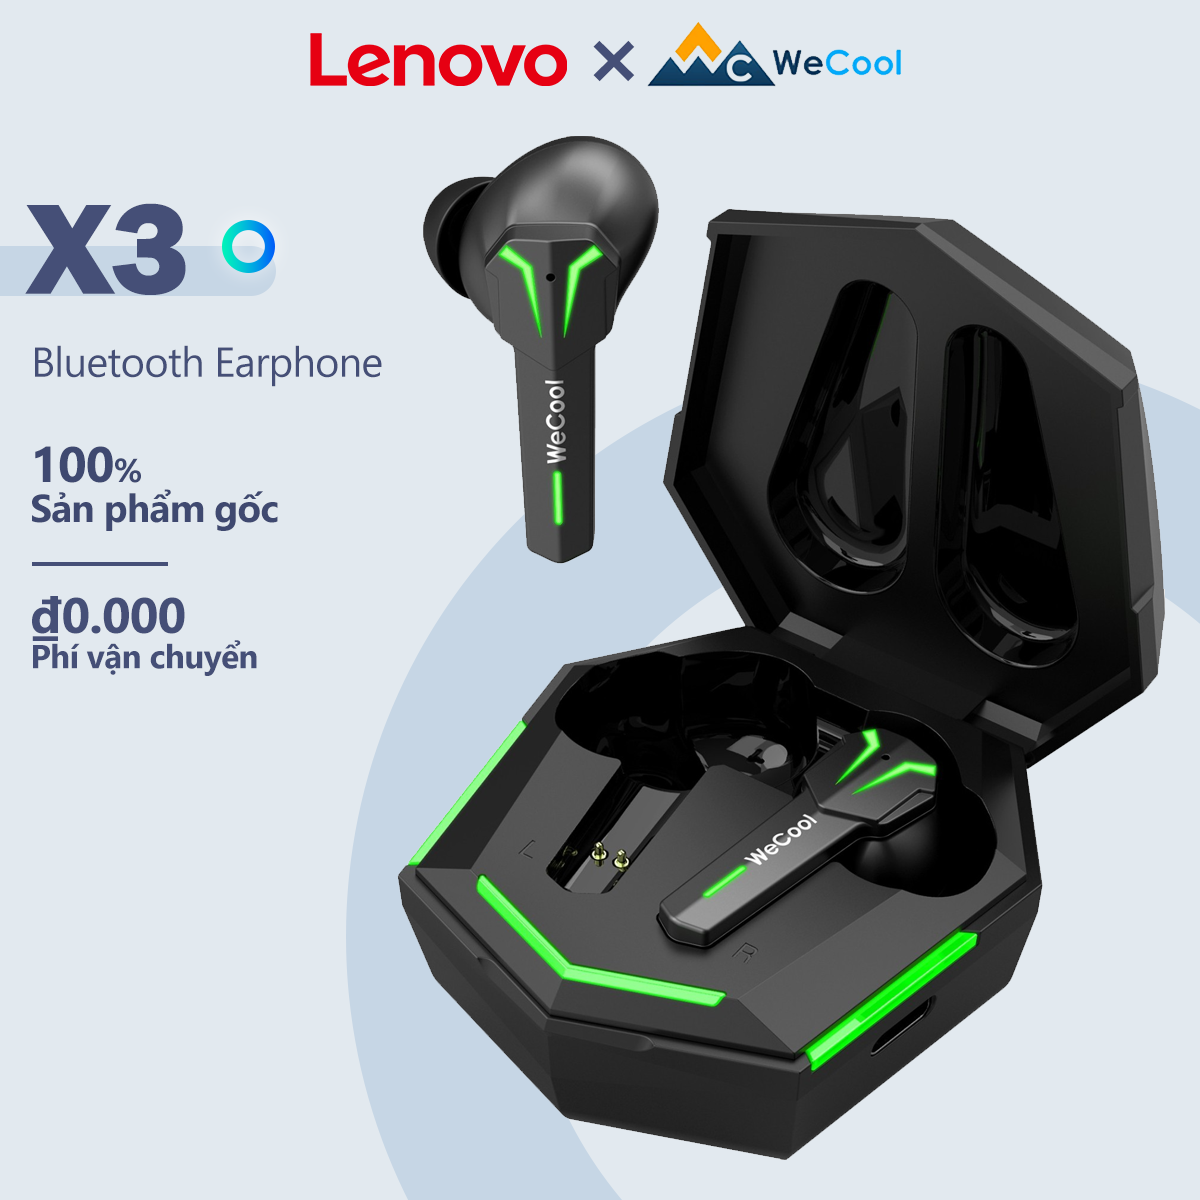 Tai nghe Lenovo x WeCool Freesolo X3 không dây đích thực với đèn RGB độ